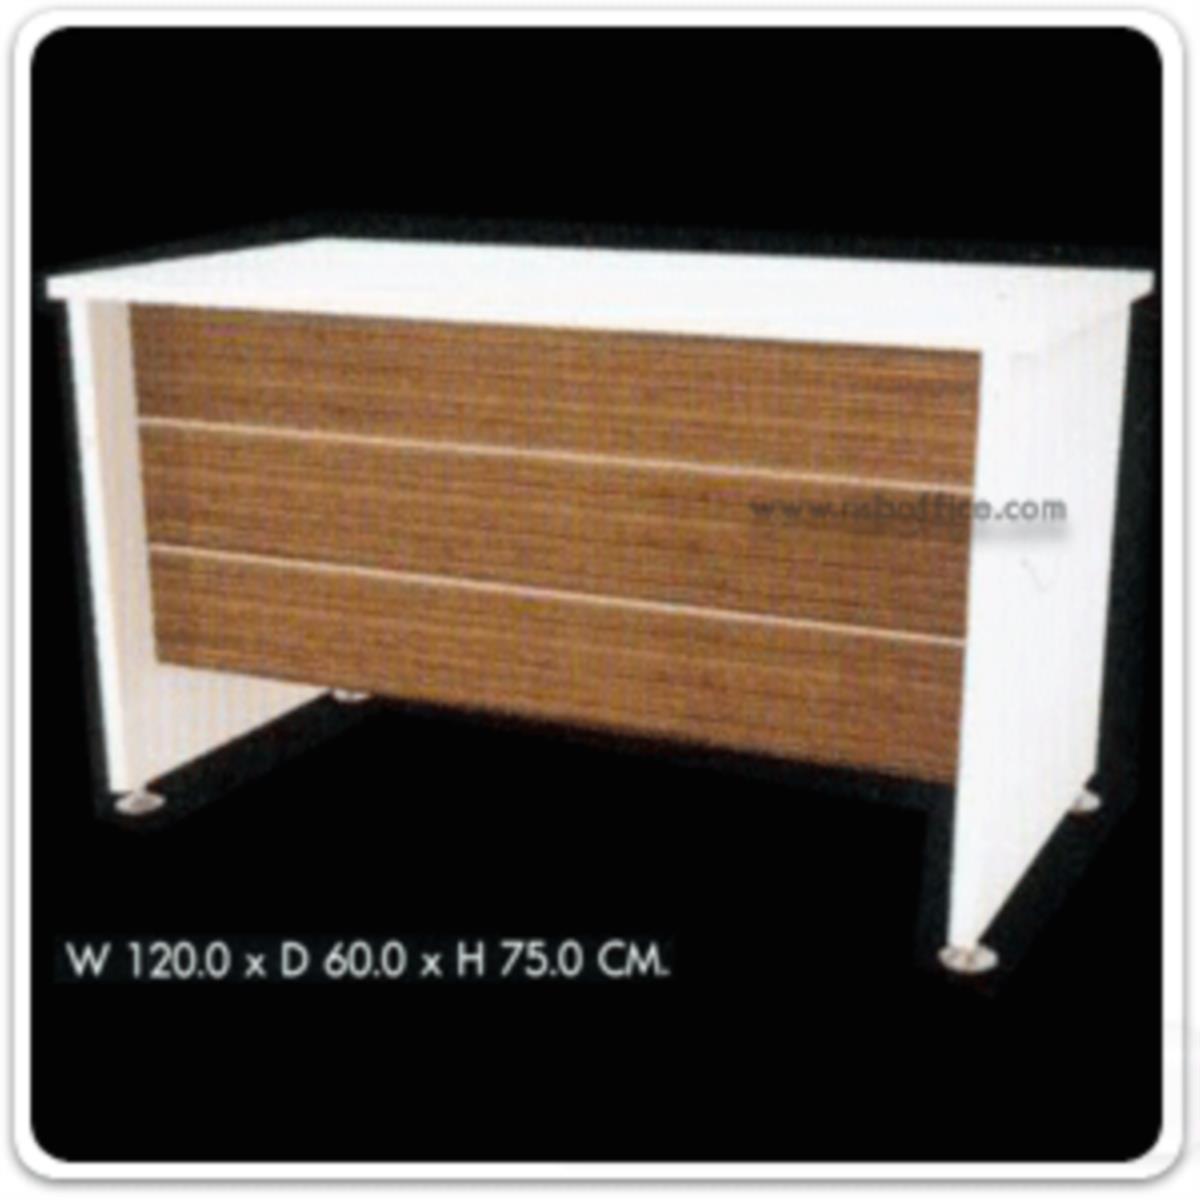 โต๊ะทำงาน รุ่น Trendroad (เทรนโรด) ขนาด 120W ,150W ,160W cm.  สีซีบราโน่-ขาว